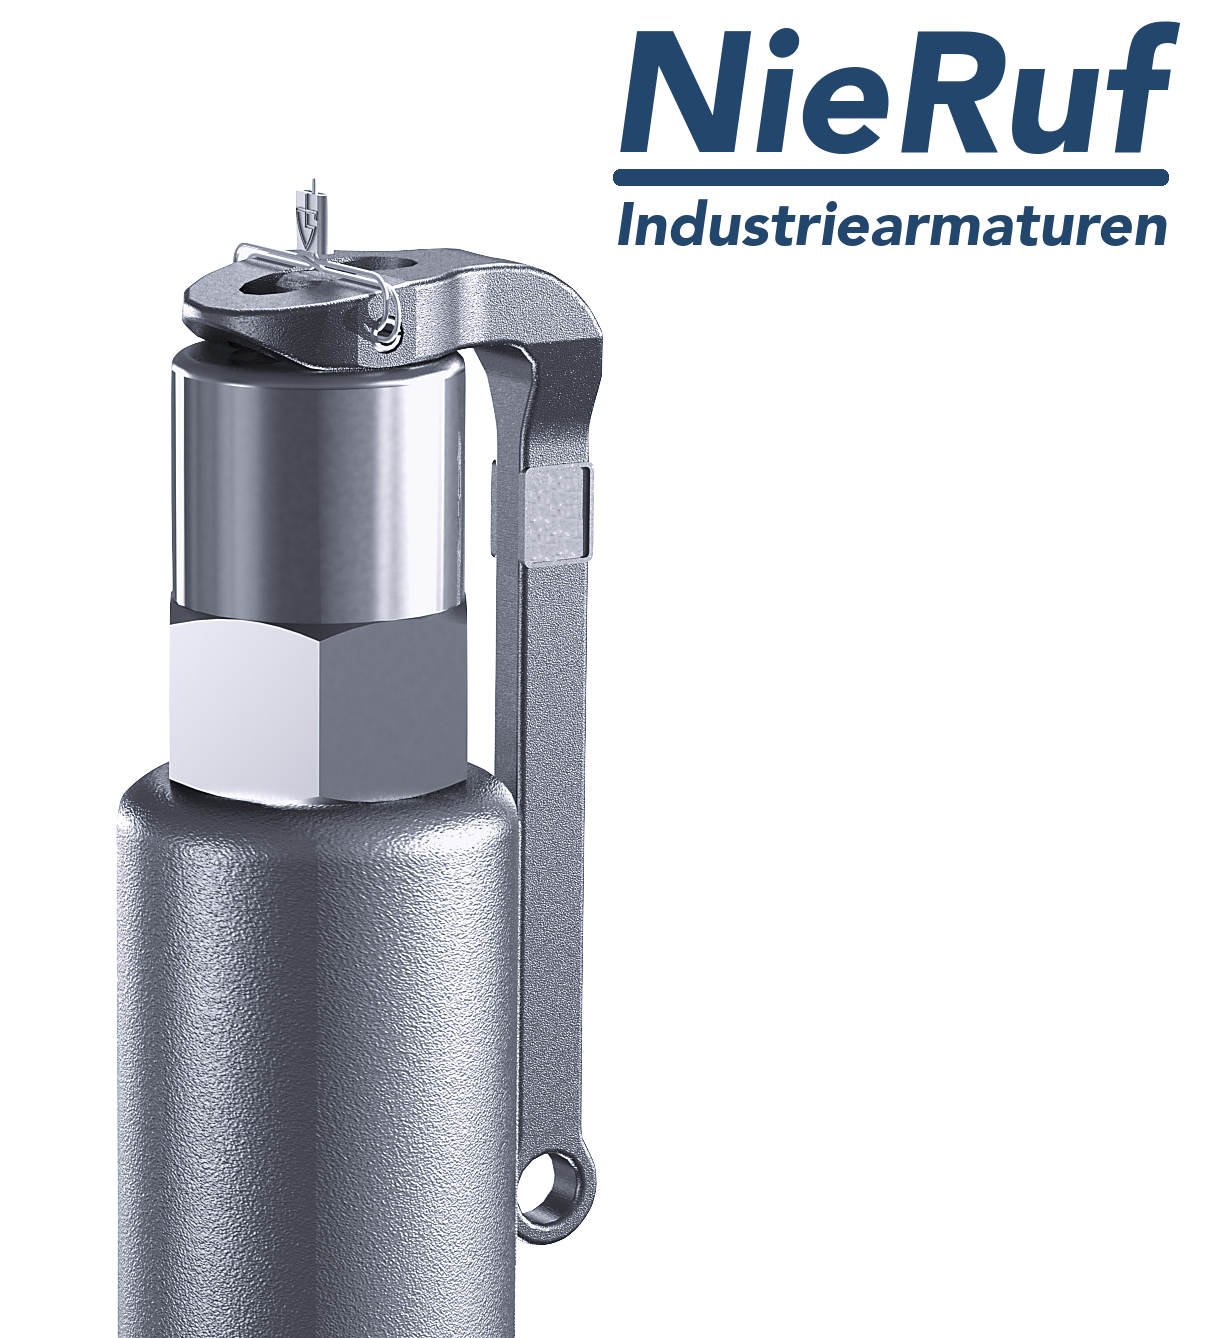 valvola di sicurezza 1 1/4" x 2" F SV05 fluidi liquidi neutri, acciaio inox NBR, con leva